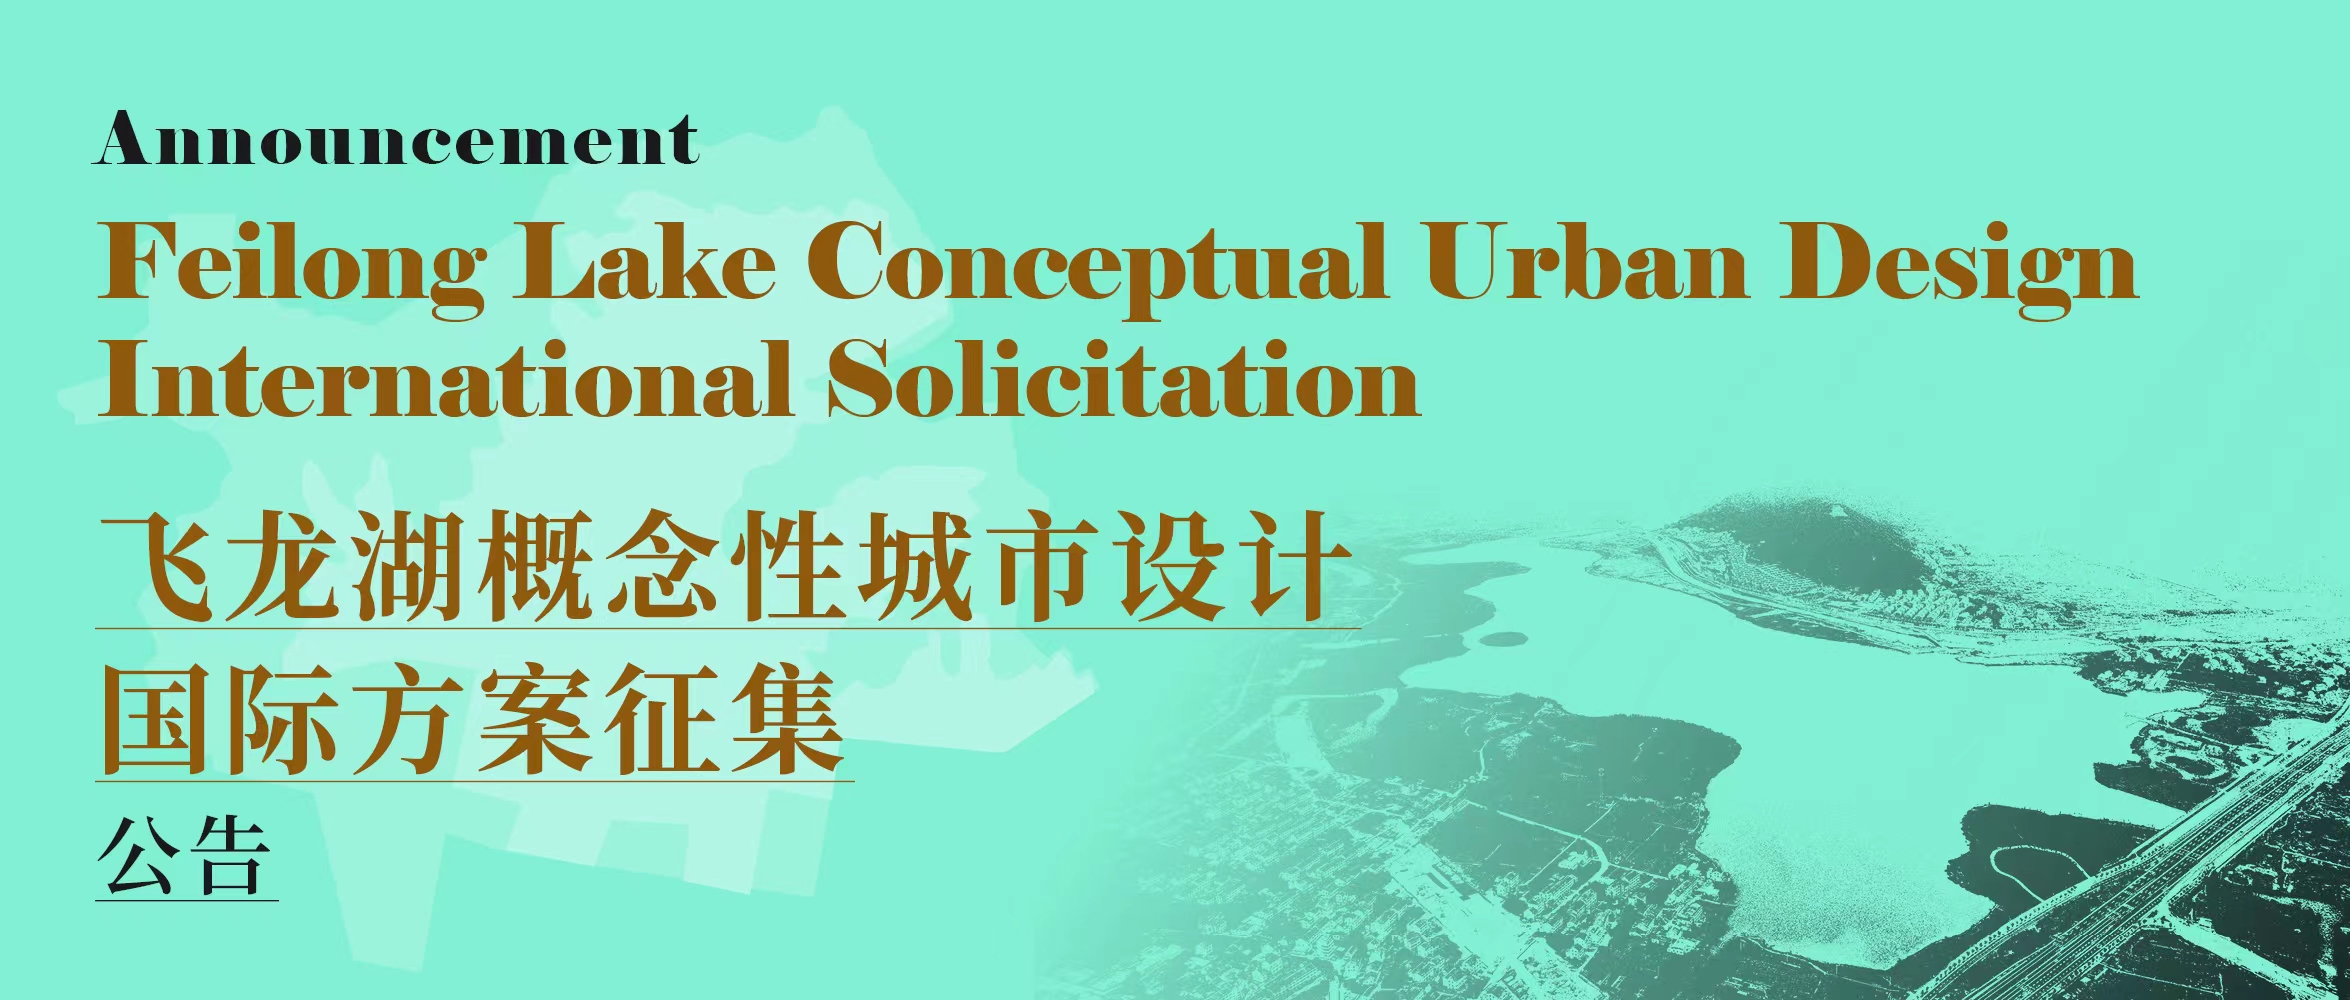 正式公告 | 飞龙湖概念性城市设计国际方案征集